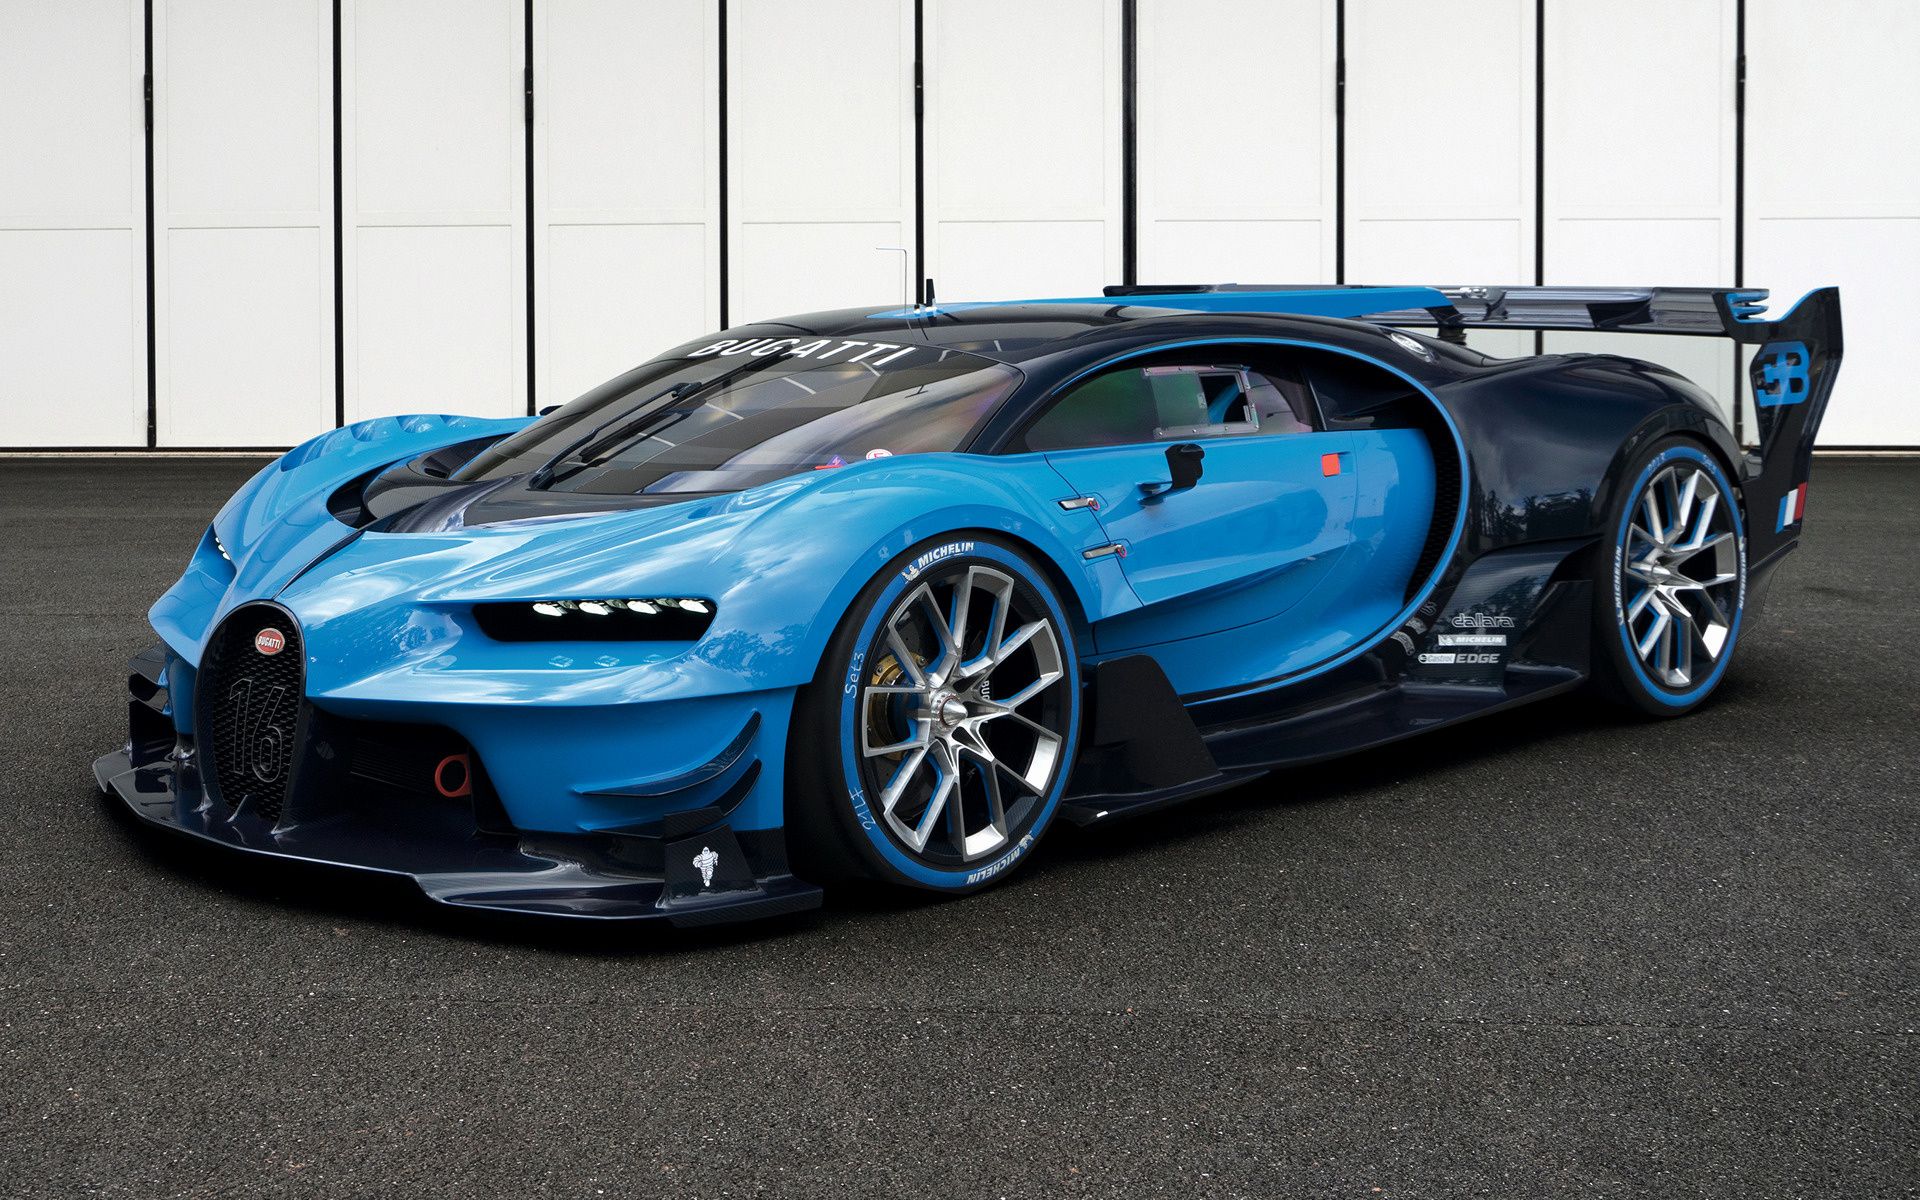 Bugatti Vision Gran Turismo and HD Image